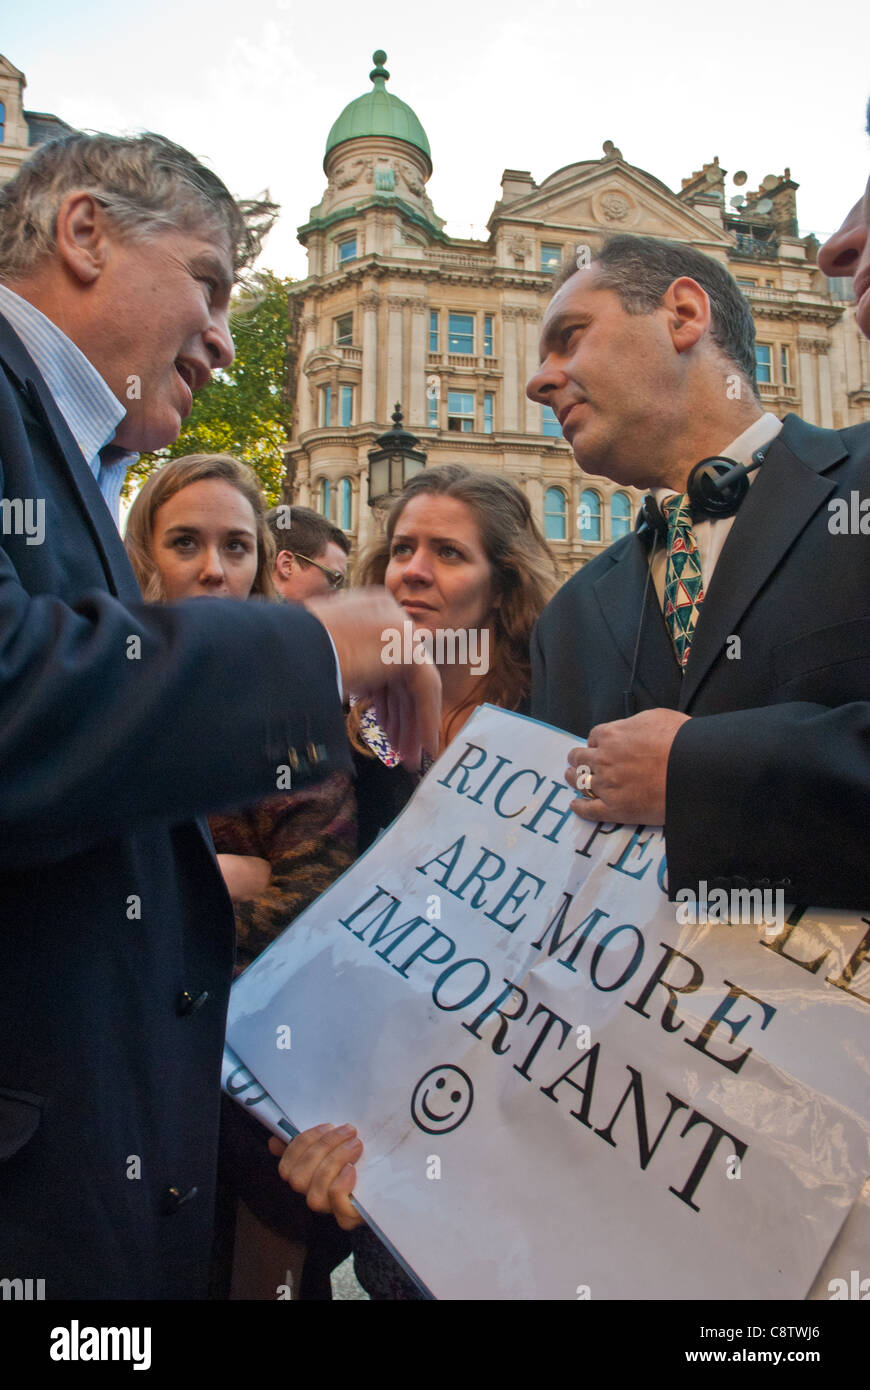 Occupare di Londra. Due uomini di mezza età in giacca (banchieri) hanno una seria discussione su un poster "ricchi sono più importante". Foto Stock